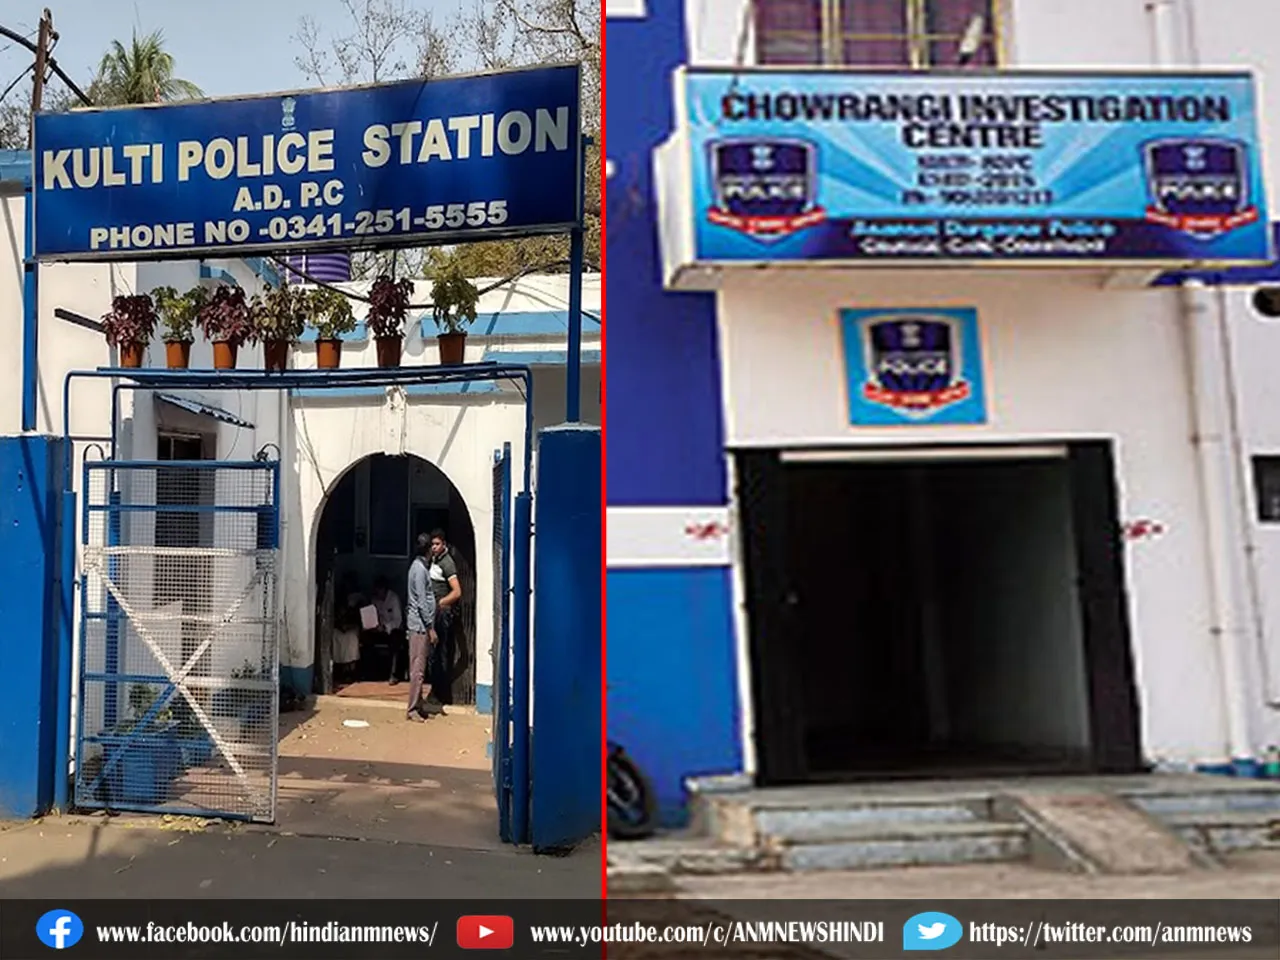 Asansol News : चौरंगी फाड़ी और कुल्टी थाना पुलिस को बिहार में मिली बड़ी सफलता